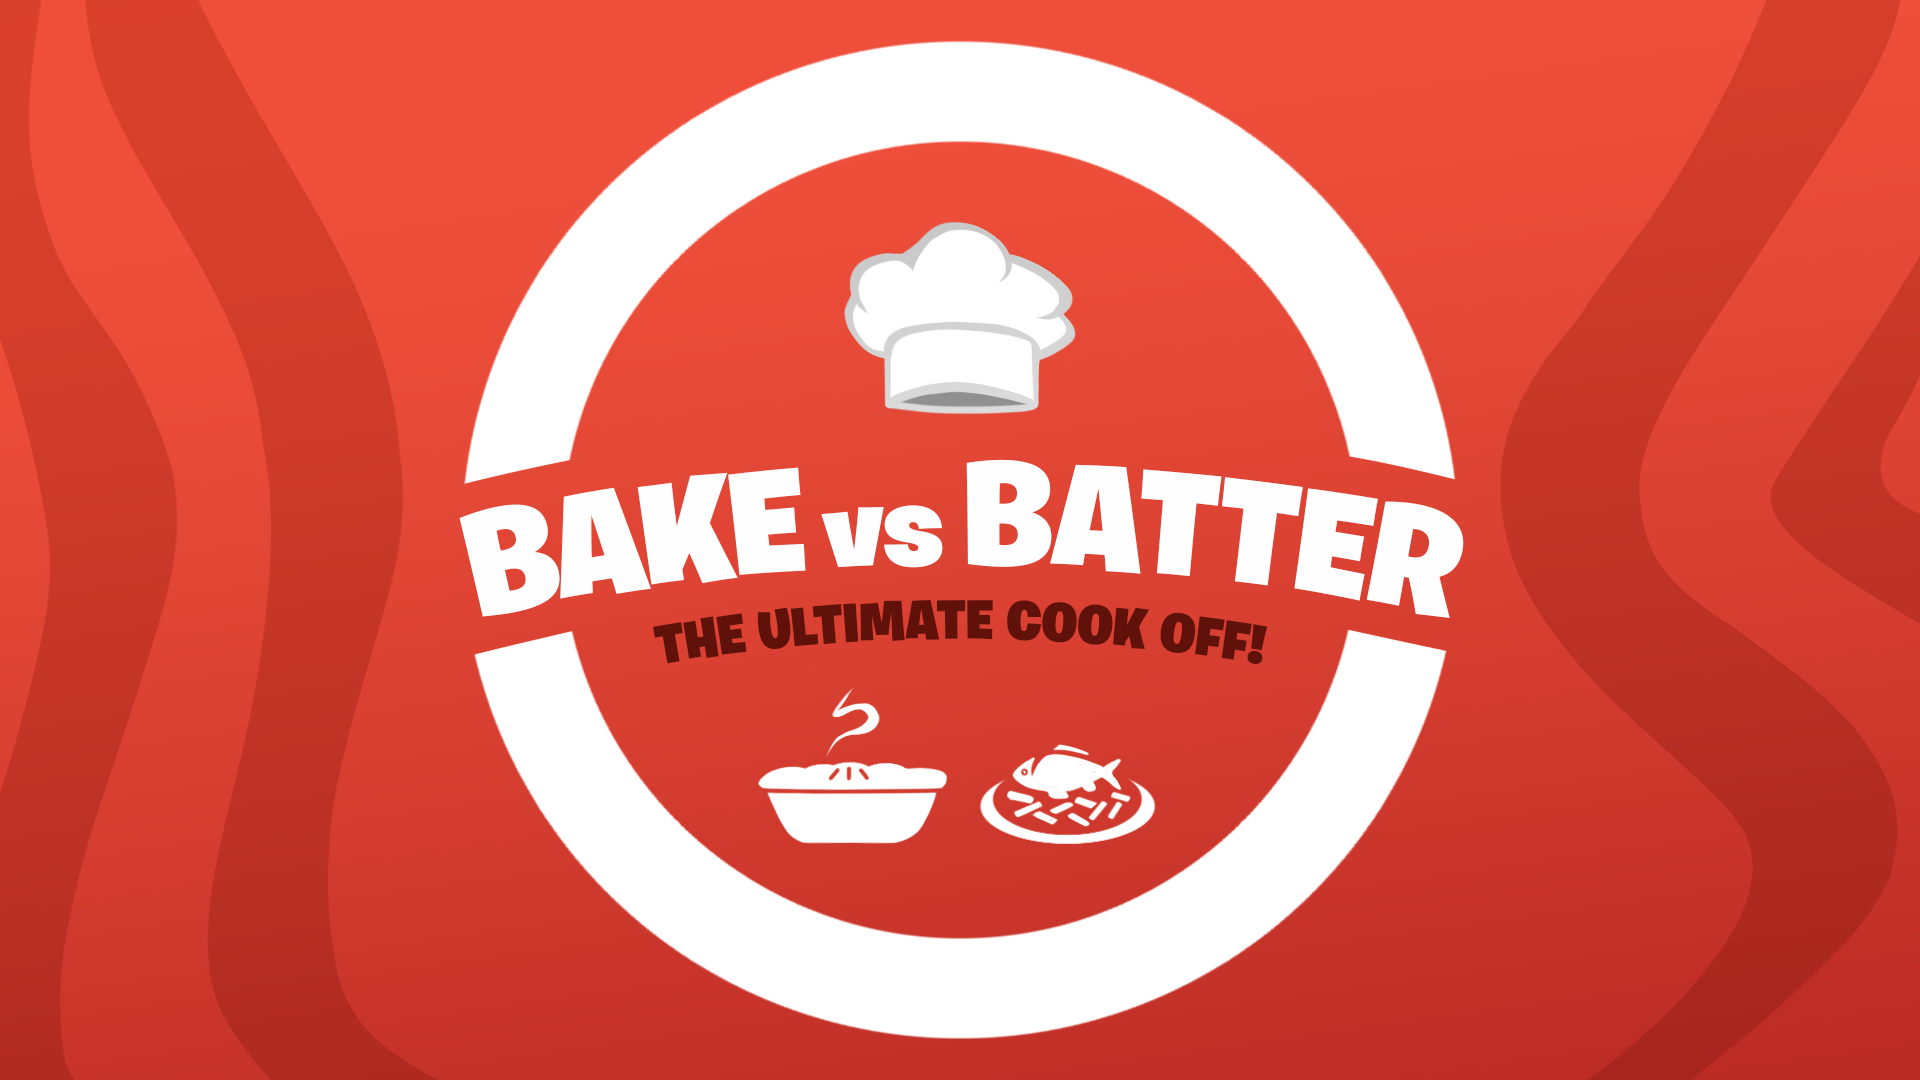 Bake Vs Batter-6164-3771-0008